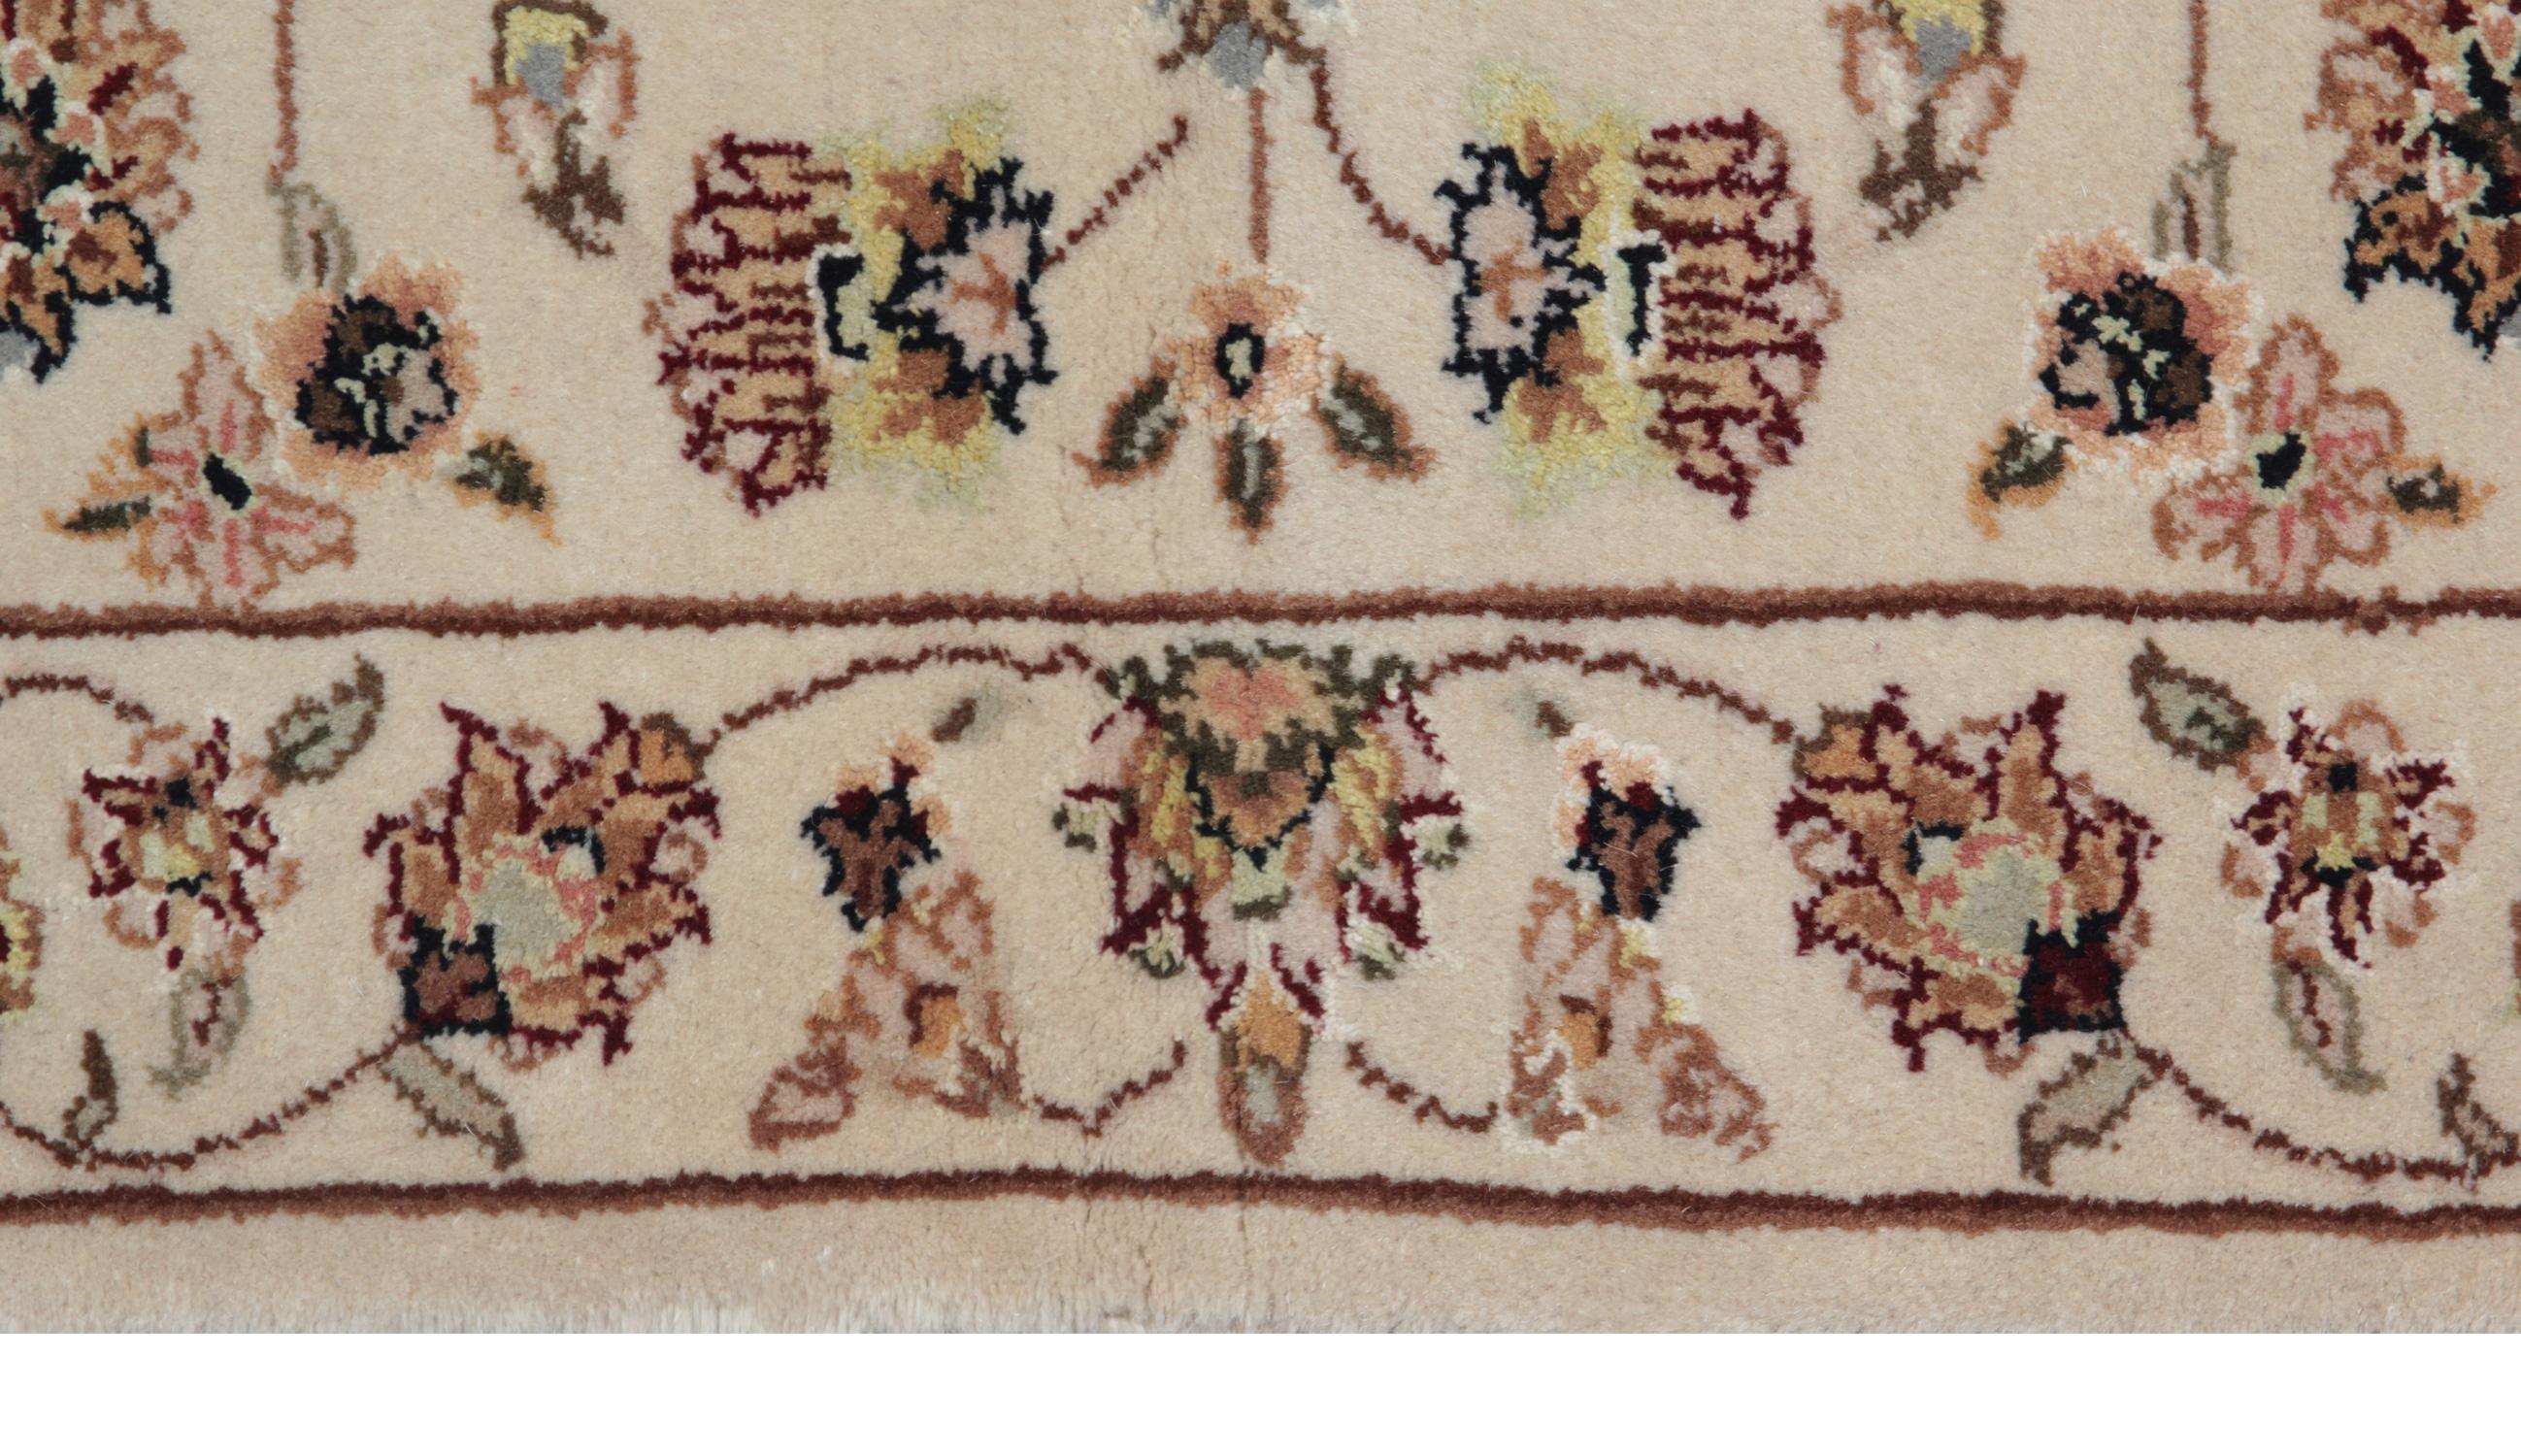 Ce tapis indien tissé à la main est un tapis Sultanabad de style Ziegler, fabriqué sur nos métiers par nos maîtres tisserands en Inde. Ces tapis orientaux faits main sont fabriqués avec des teintures végétales entièrement naturelles et de la laine